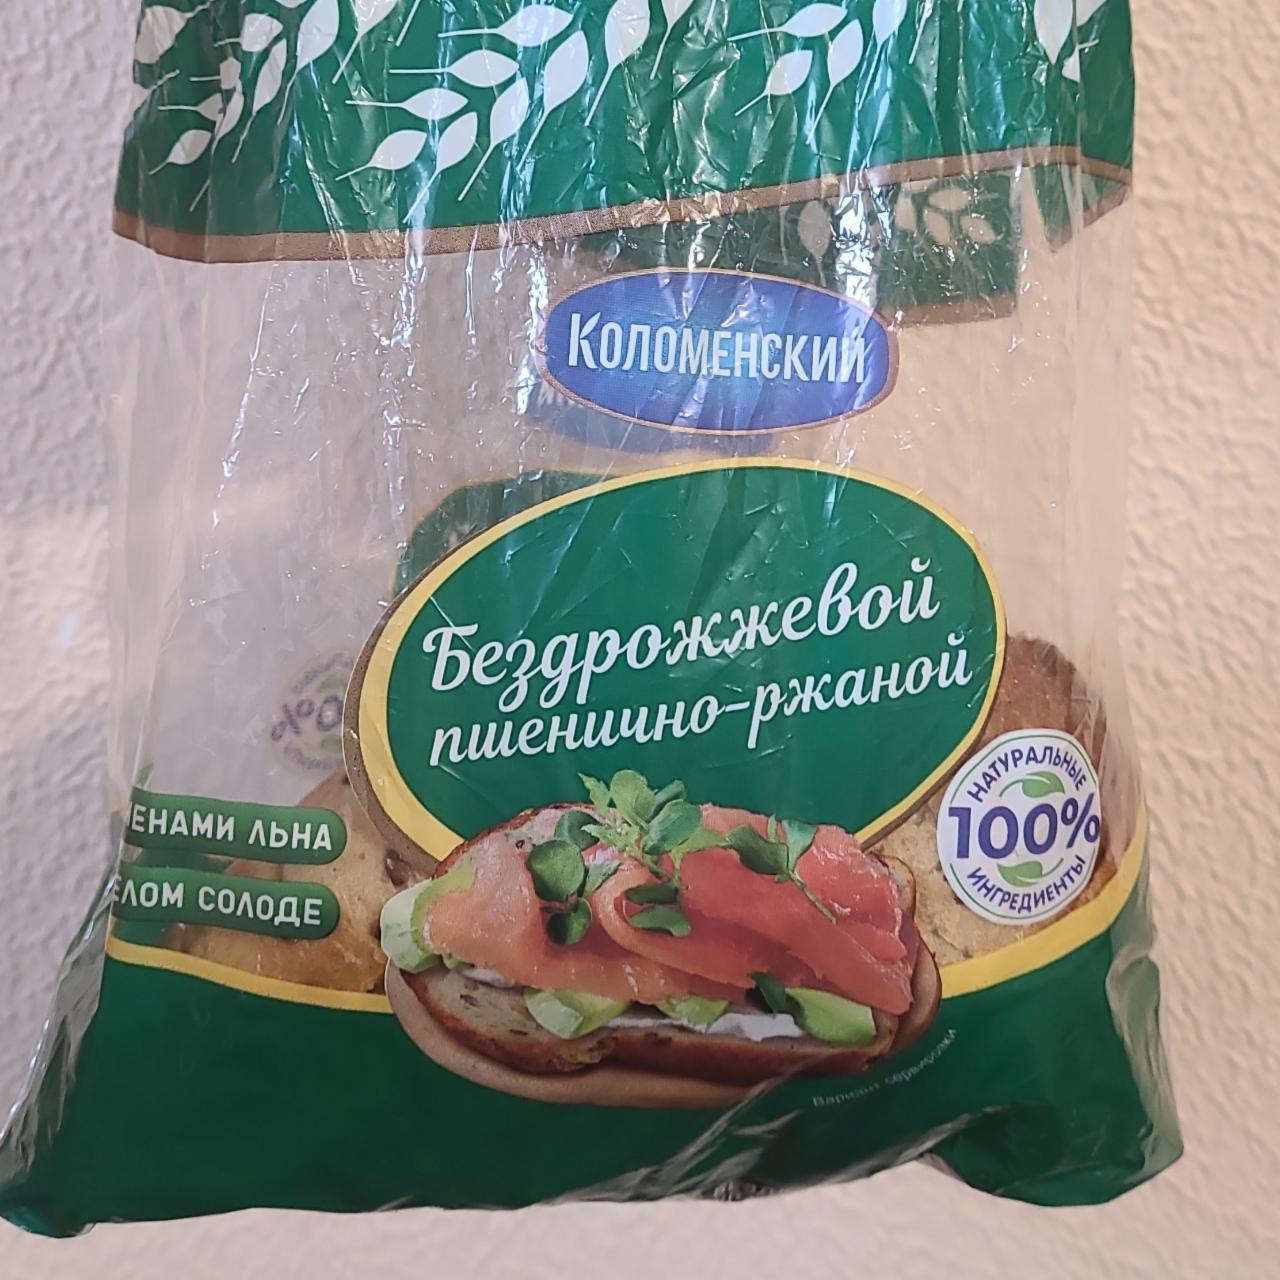 Фото - Хлеб бездрожжевой пшенично-ржаной с семенами льна Коломенский